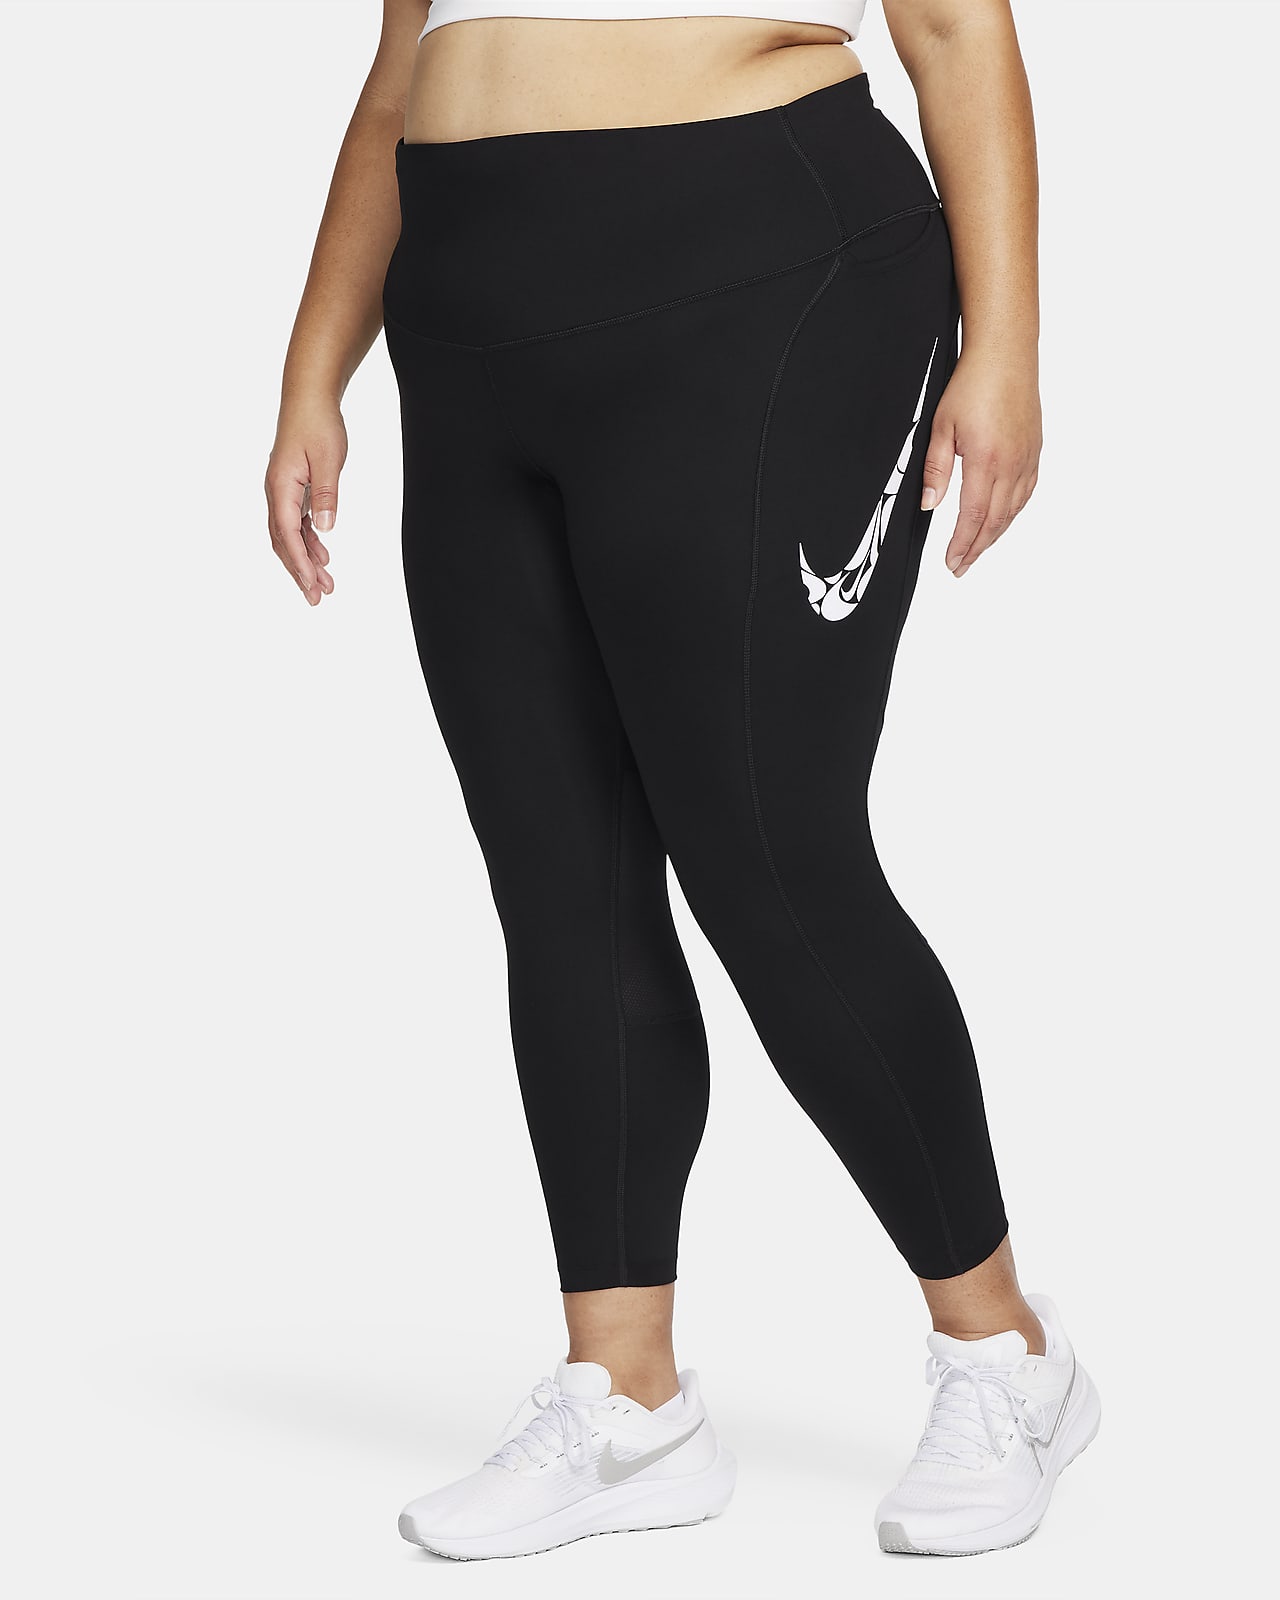 Löparleggings Nike Fast i 7/8-längd med medelhög midja och fickor för kvinnor (Plus Size)